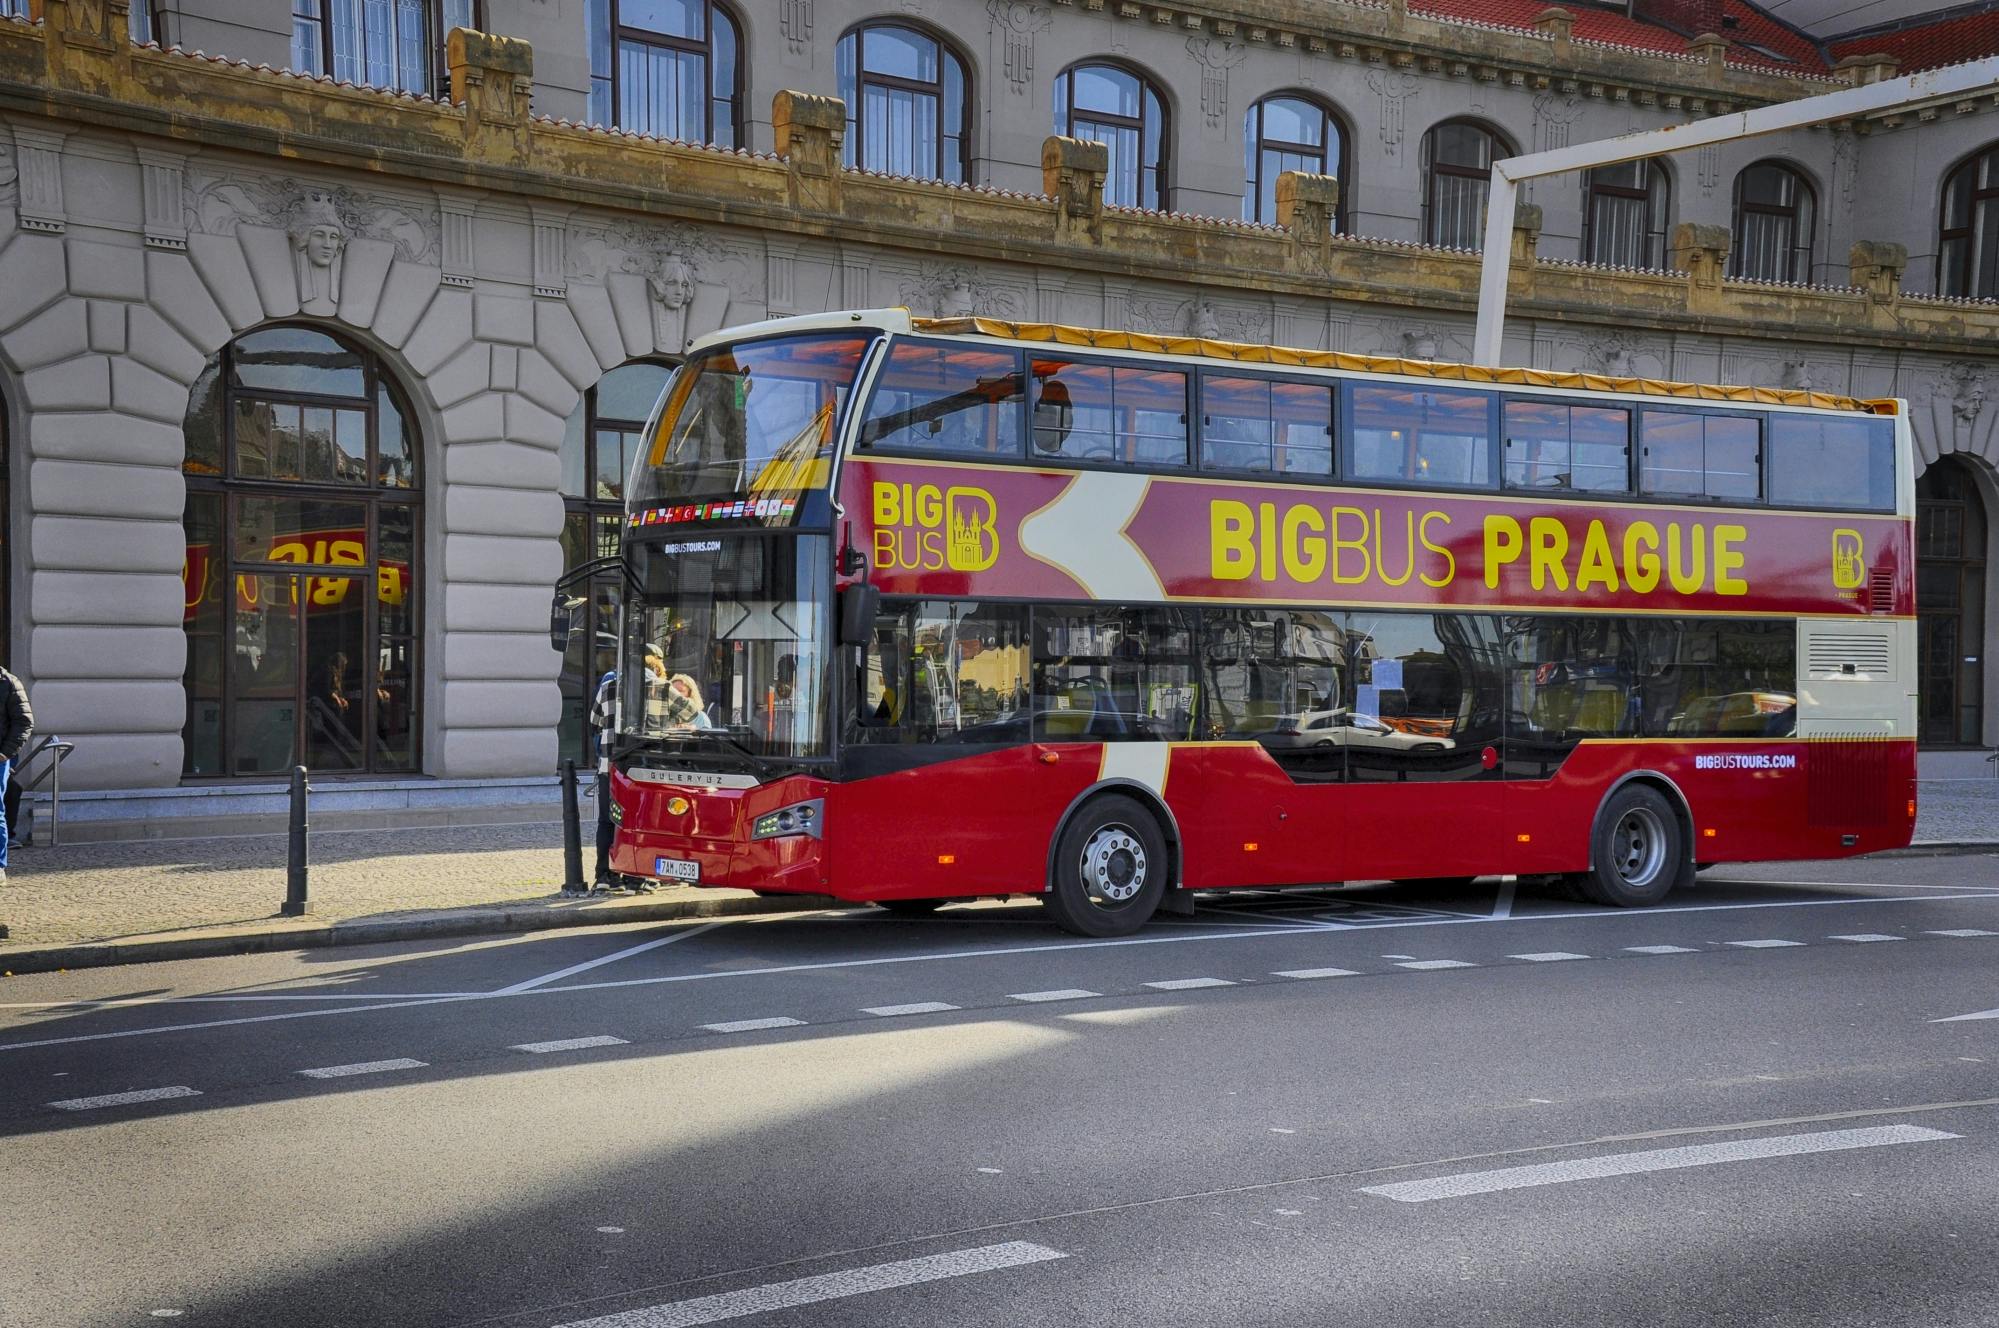 Big Bus hop-on hop-off busstur i Prag